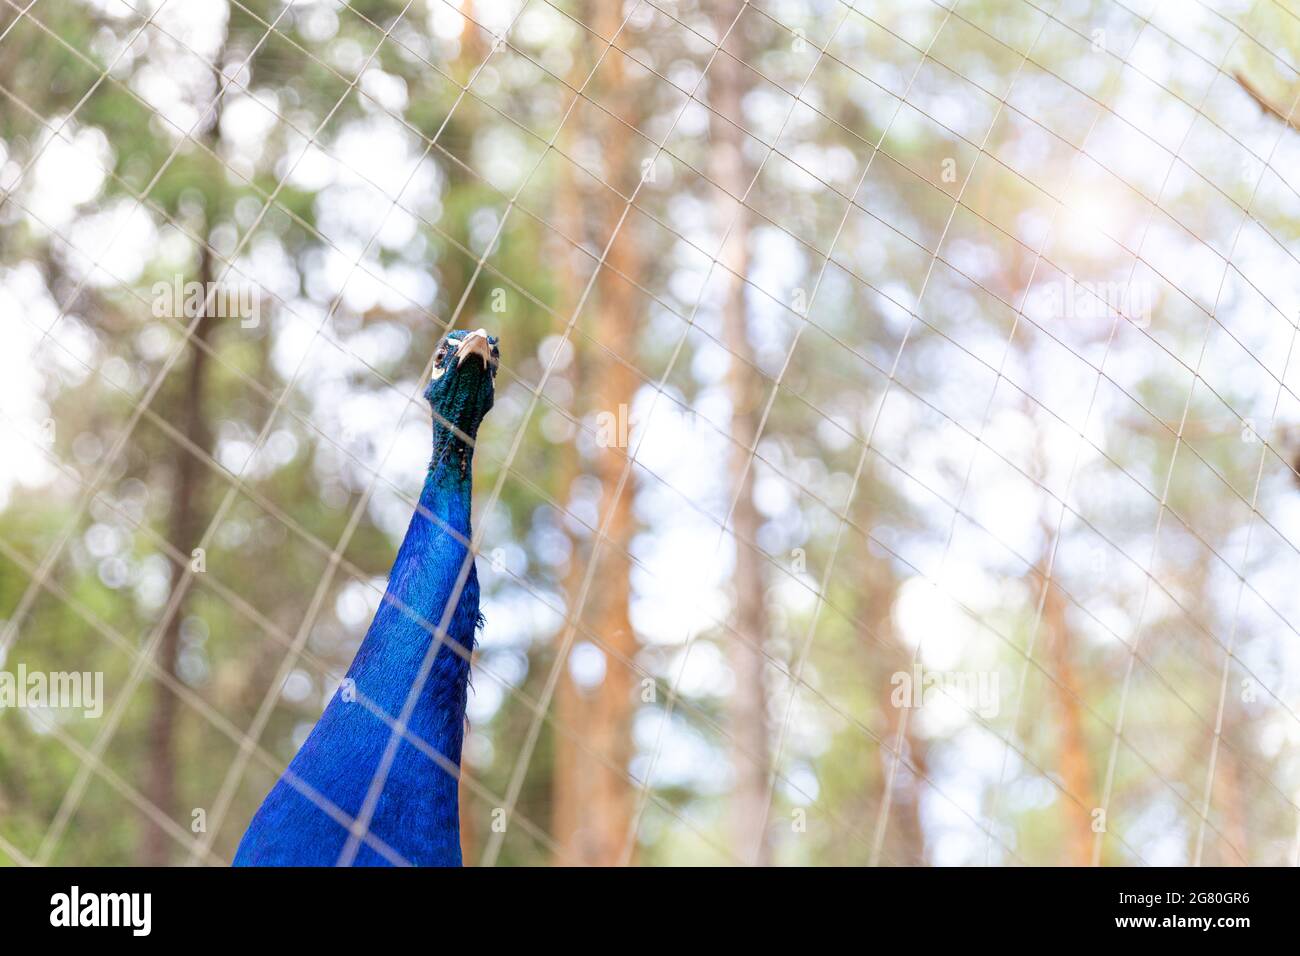 Testa e collo di un pavone maschio blu, guardando la macchina fotografica attraverso la gabbia in rete presso lo zoo. Animali in cattività. Bird watching, ontologia. Selettivo Foto Stock